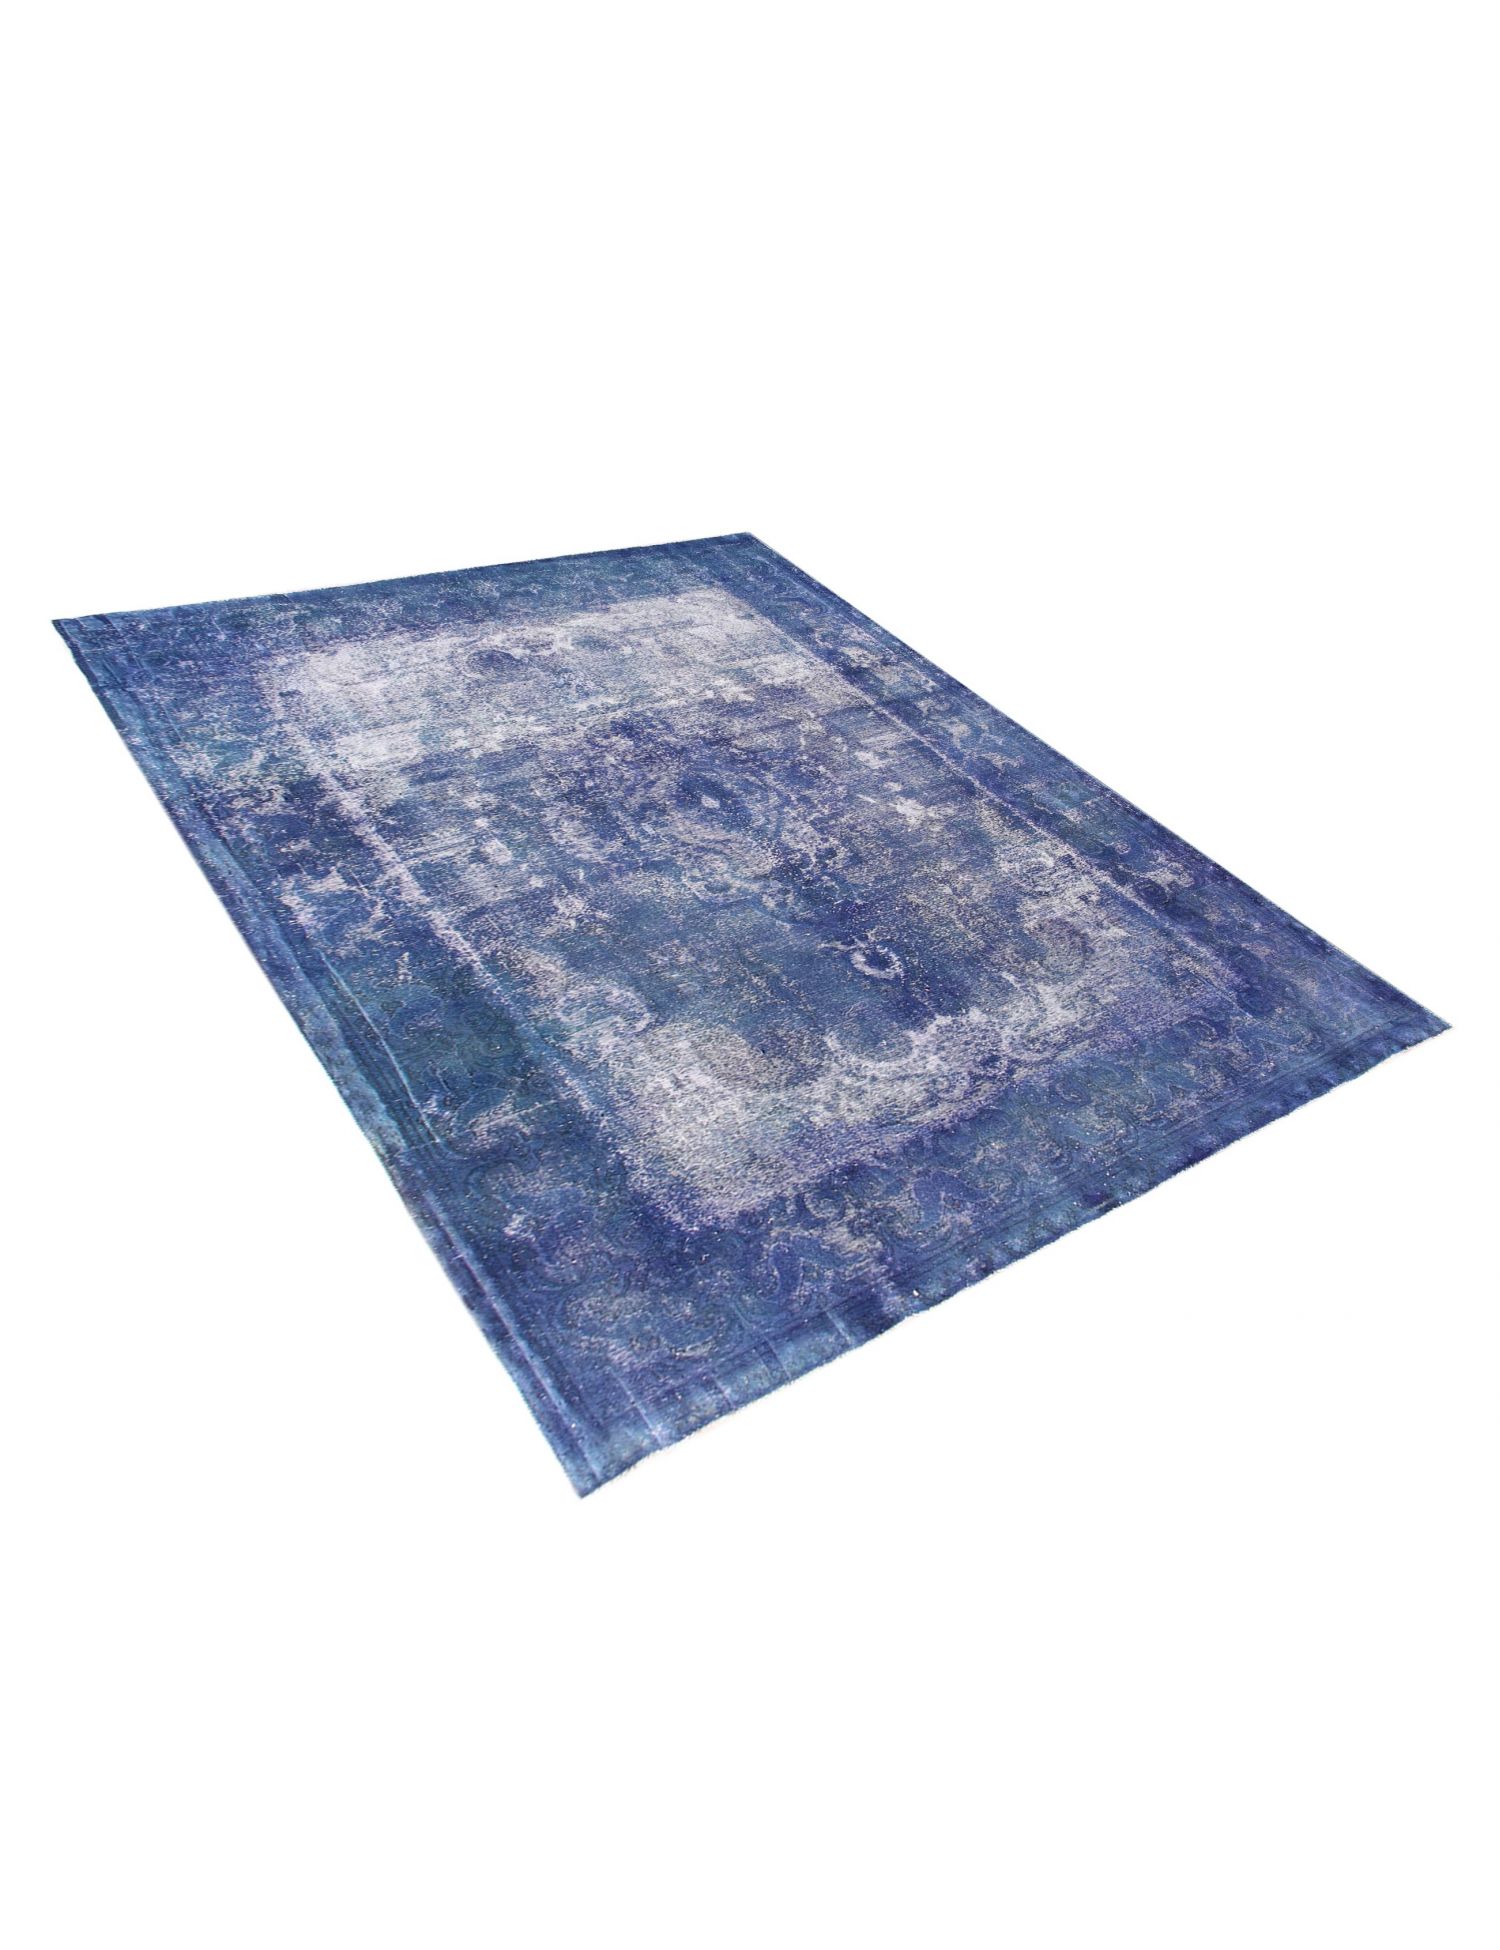 Persian Vintage Carpet  blue <br/>390 x 300 cm